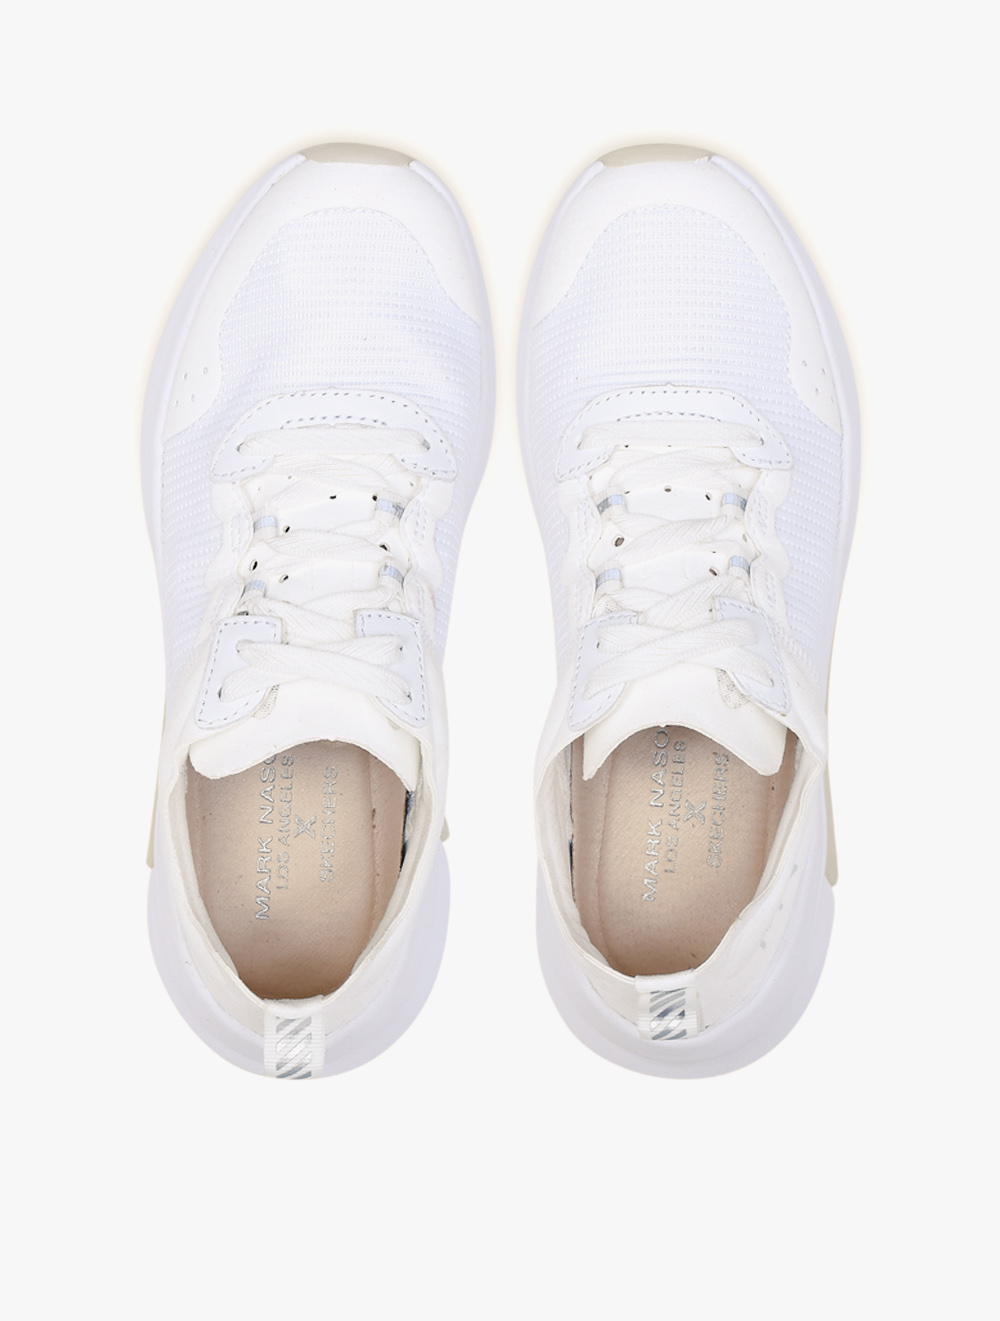 Skechers Modern Jogger 2.0 Womens Sneaker Shoes - White